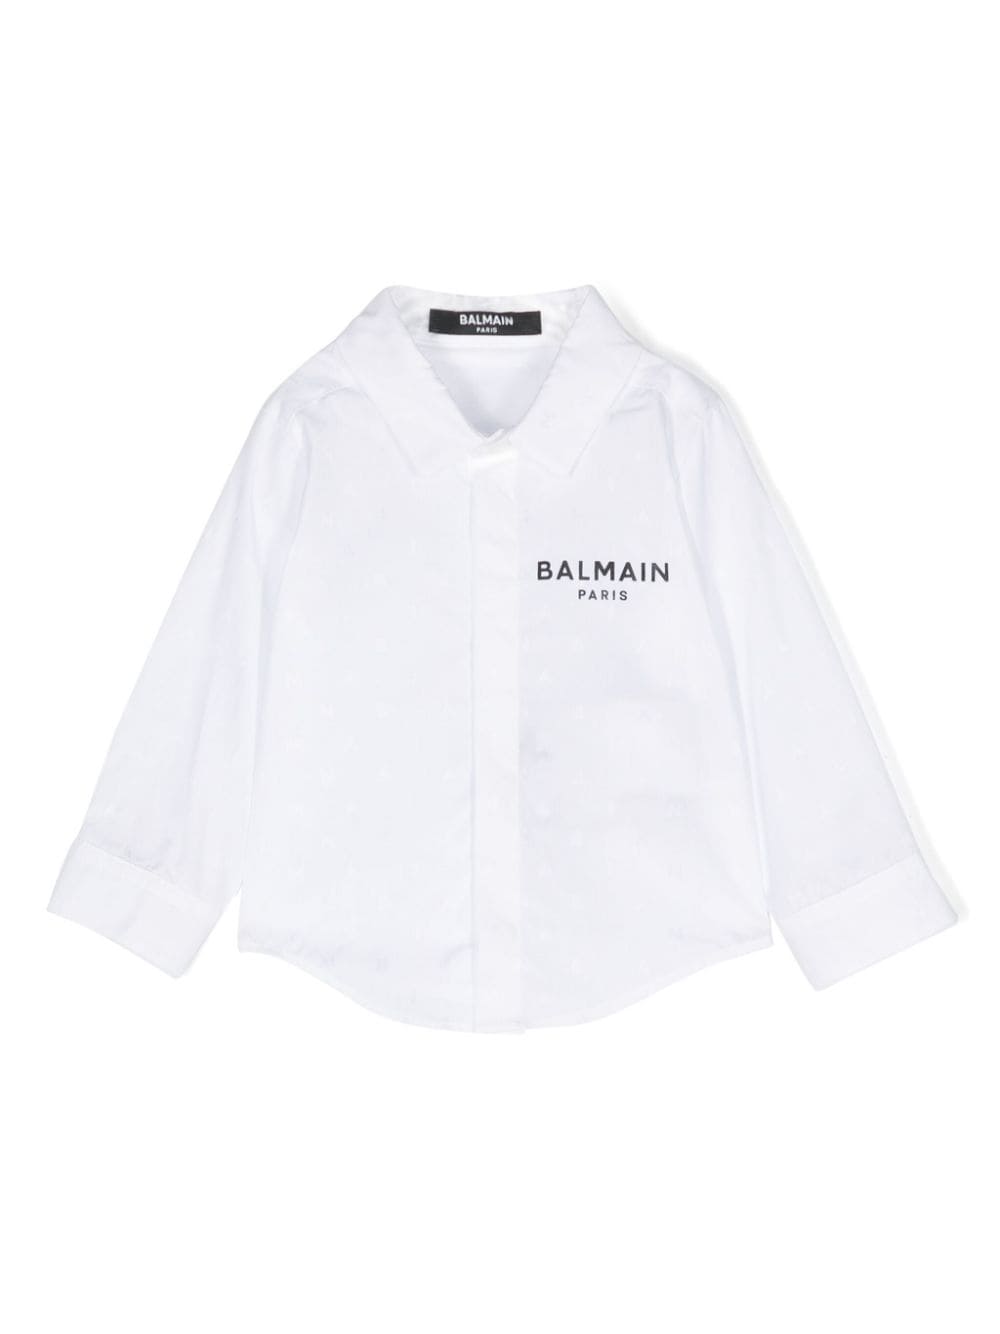 Image 1 of Balmain Kids monogram-jacquard cotton shirt